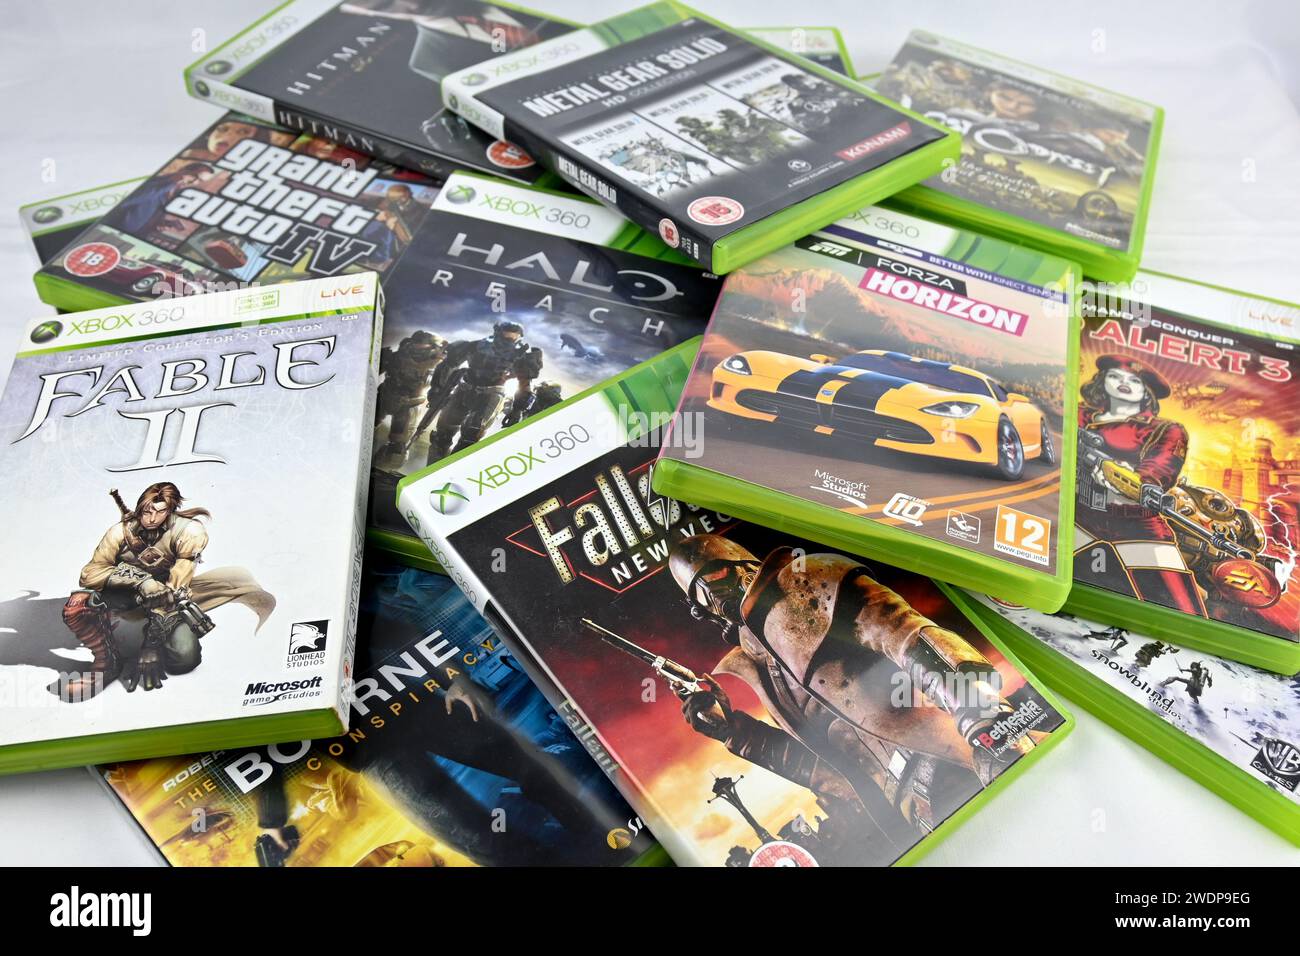 Image éditoriale de la sélection de jeux vidéo Microsoft Xbox 360 – pays de Galles, Royaume-Uni – 21 janvier 2024 Banque D'Images